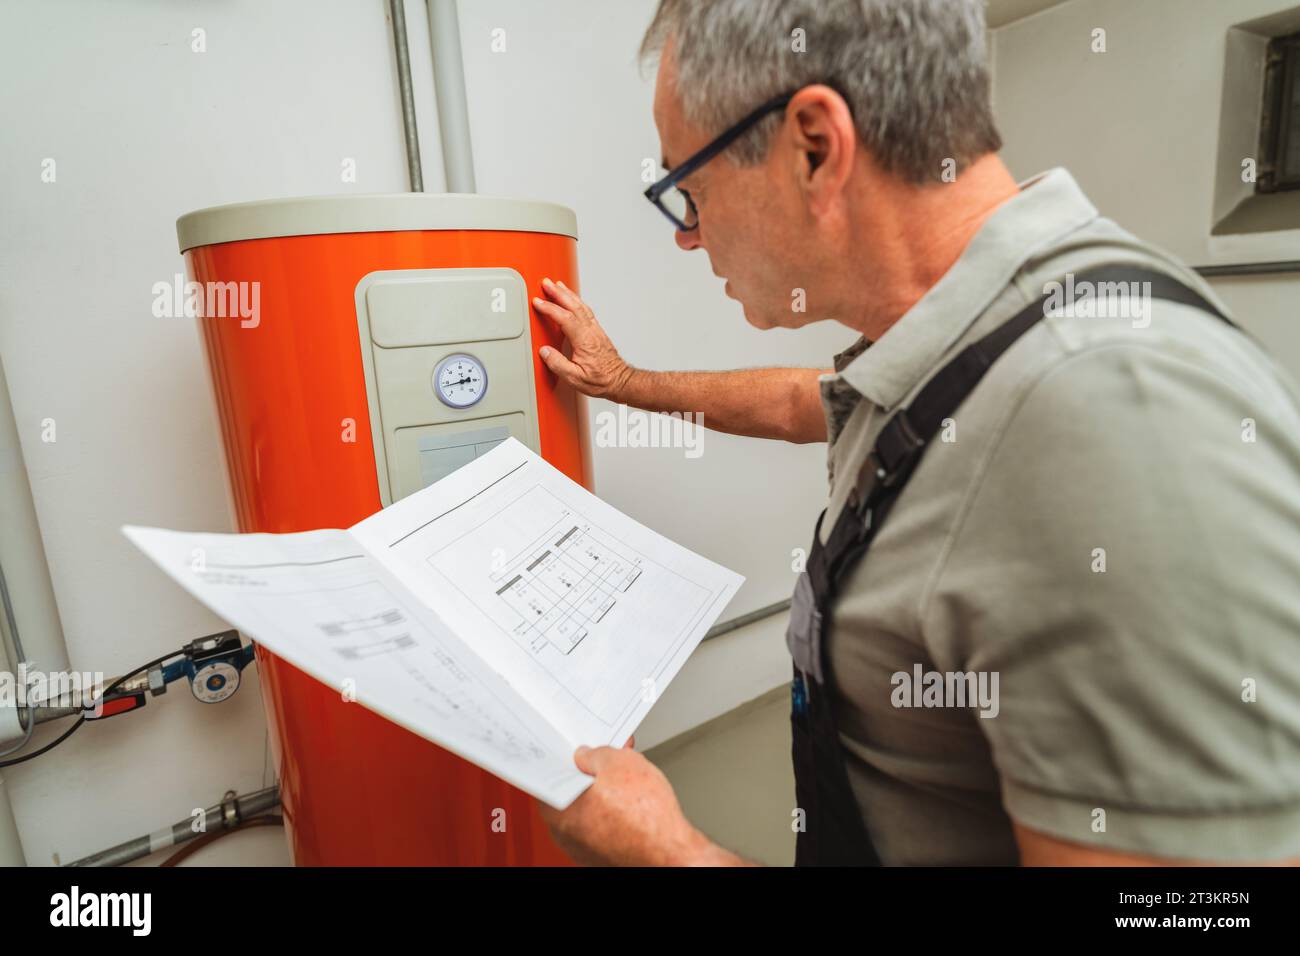 Heizungsingenieure überprüfen eine alte Gasheizung mit einer Papieranweisung in einem Heizraum in einem Haus. Konzept für den Austausch von Gasheizgeräten, Abb. Stockfoto